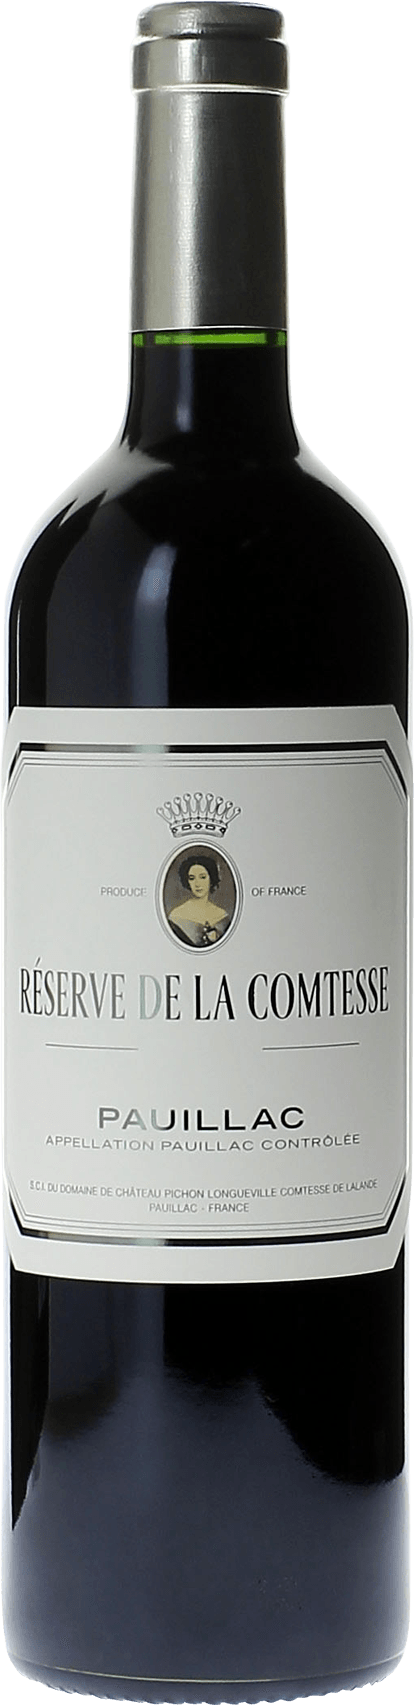 Reserve de la comtesse 2009 2nd Vin de Pichon Comtesse Pauillac, Bordeaux rouge